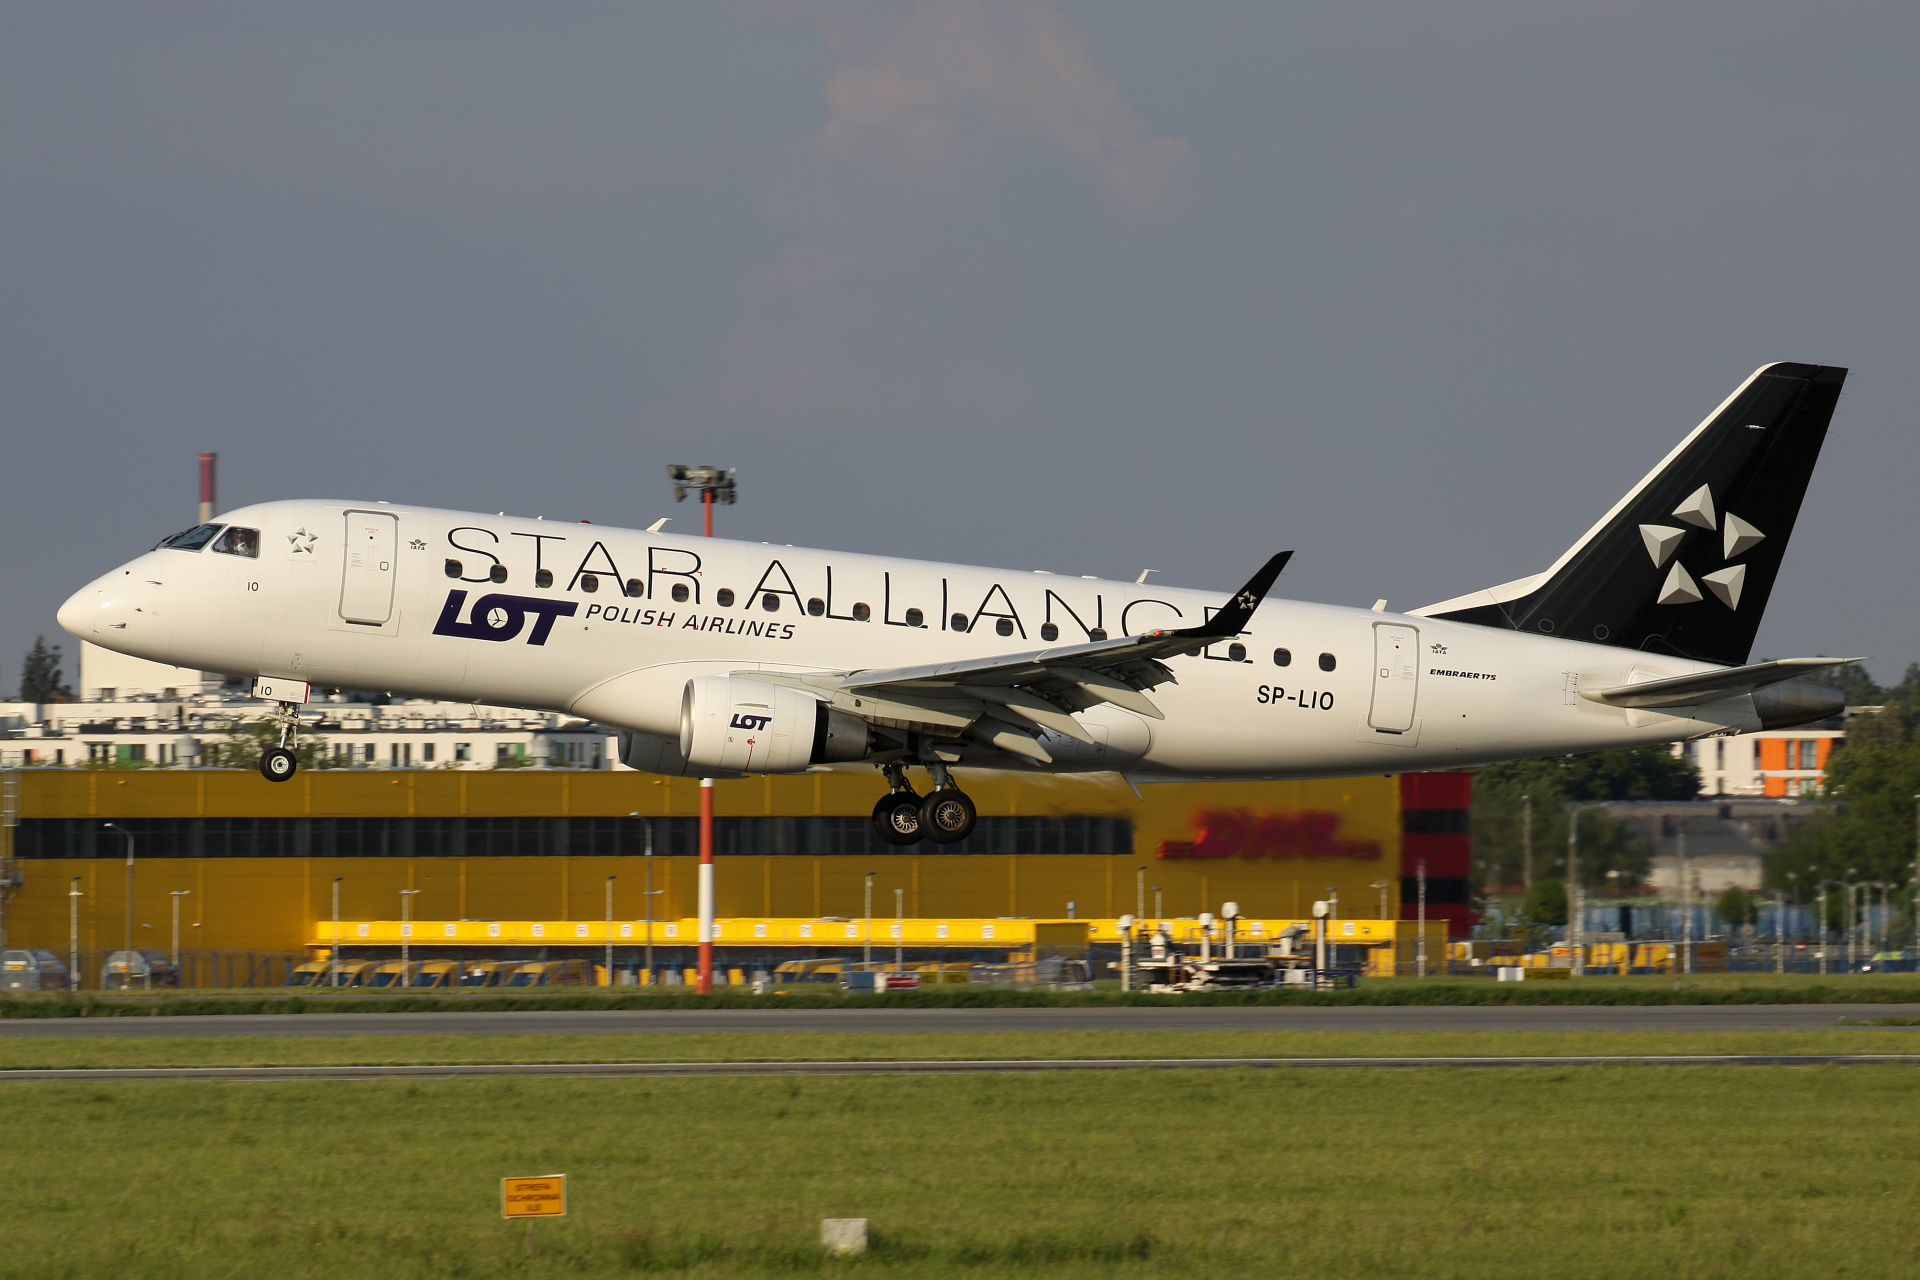 SP-LIO (malowanie Star Alliance) (Samoloty » Spotting na EPWA » Embraer E175 » Polskie Linie Lotnicze LOT)